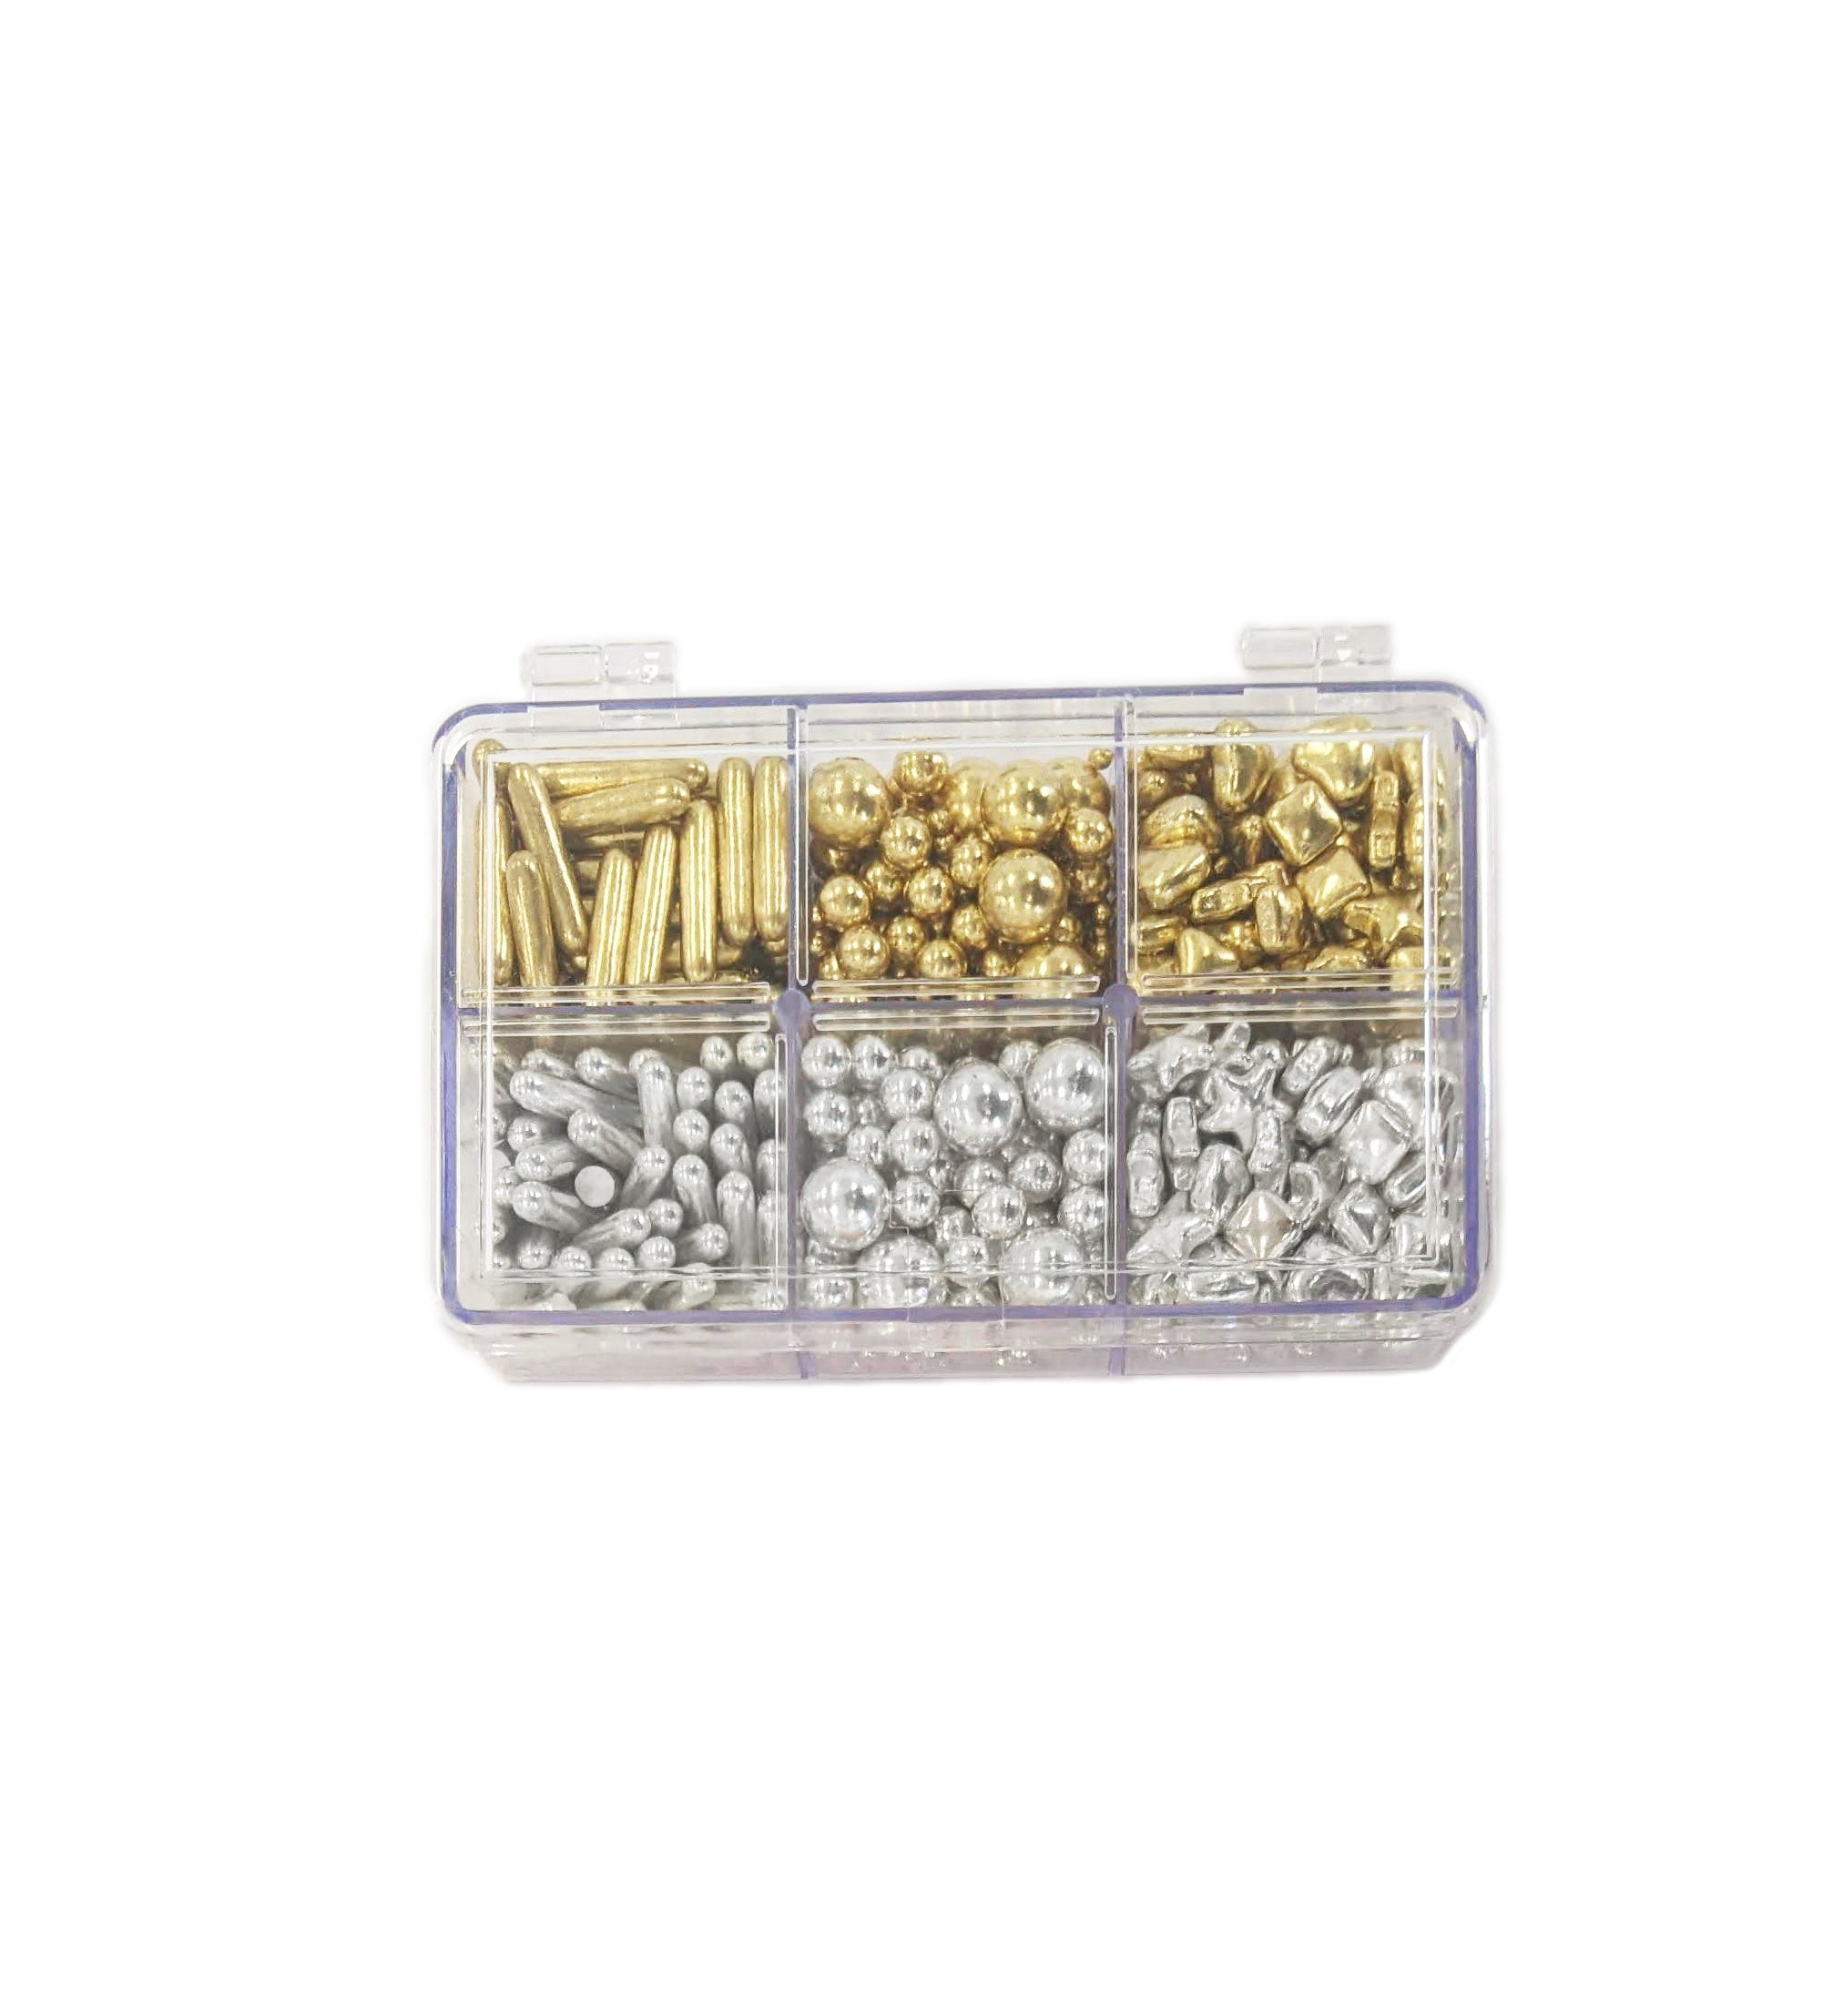 Over The Top Edible Bling Metallic Bento Box Gold & Silver Sprinkles Mix 120g